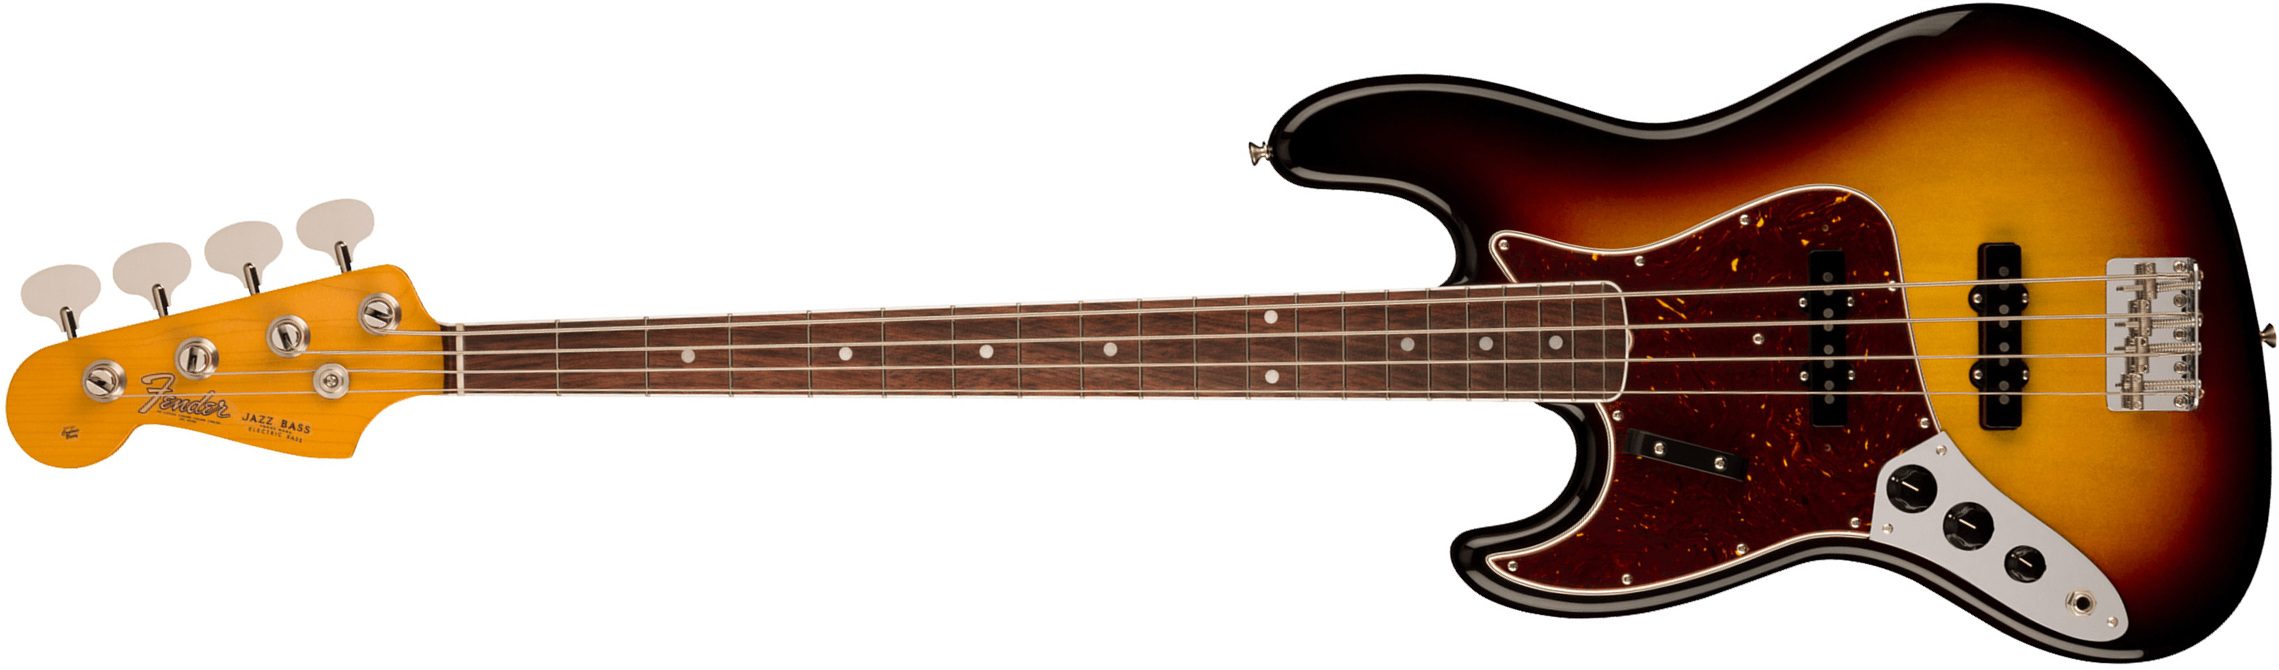 Fender Jazz Bass 1966 American Vintage Ii Lh Gaucher Usa Rw - 3-color Sunburst - Basse Électrique Solid Body - Main picture